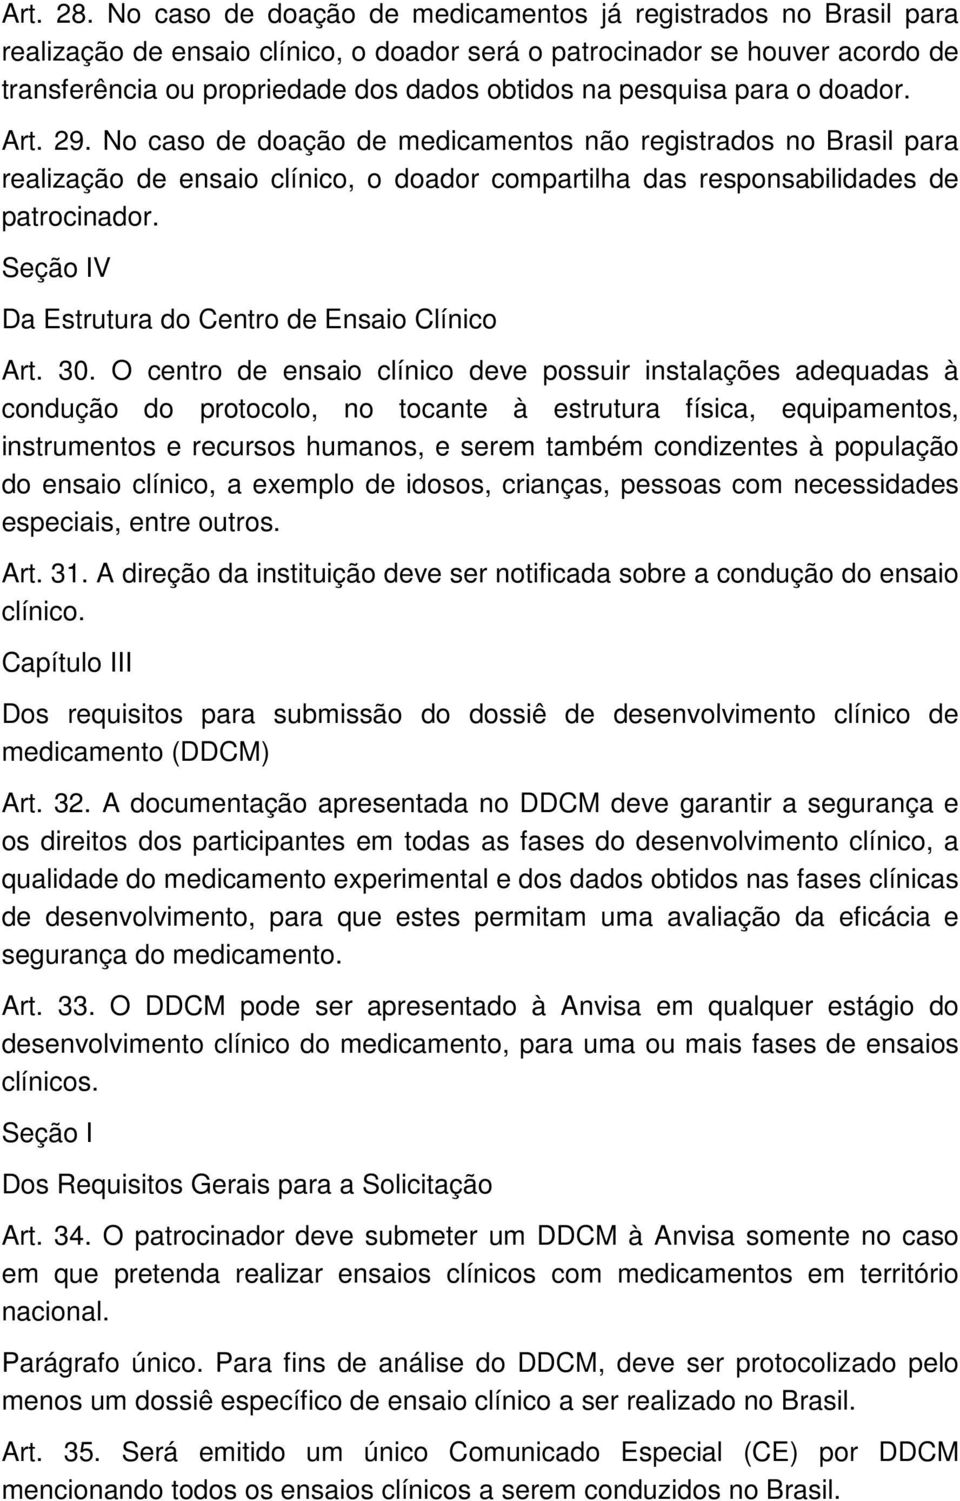 pesquisa para o doador. Art. 29. No caso de doação de medicamentos não registrados no Brasil para realização de ensaio clínico, o doador compartilha das responsabilidades de patrocinador.